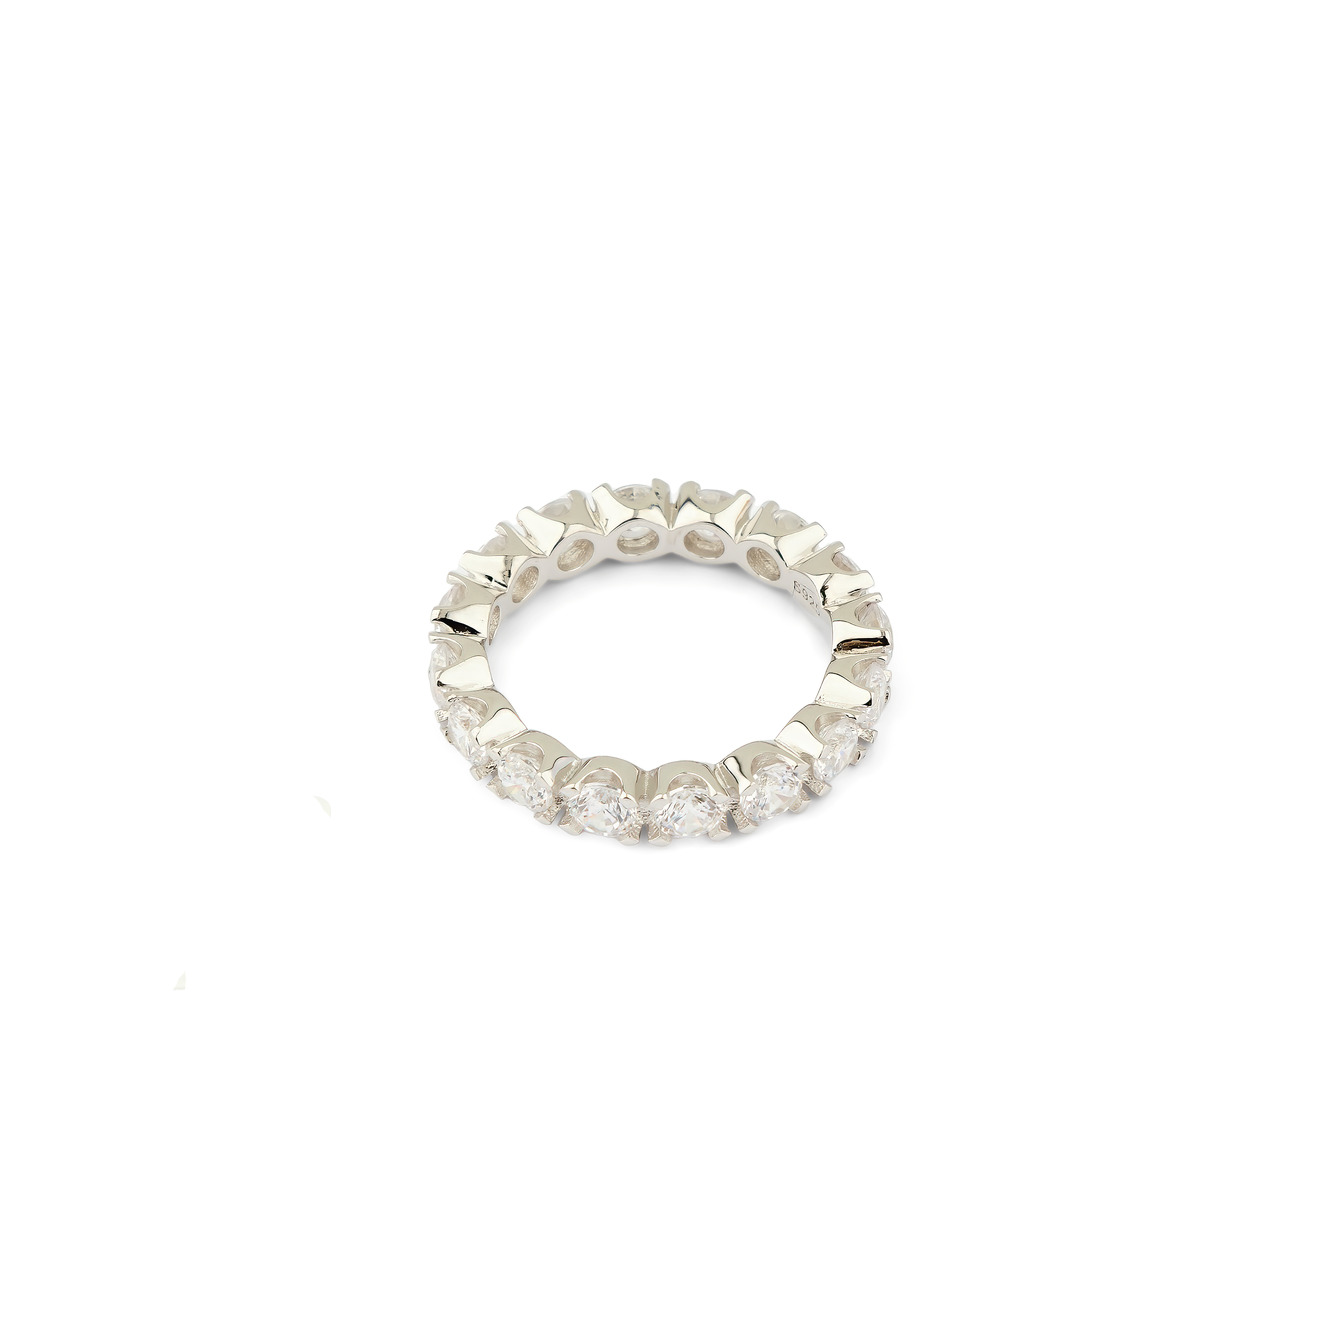 Holy Silver Тонкое кольцо из серебра с дорожкой из белых кристаллов skye покрытое розовым золотом квадратное кольцо из серебра с дорожкой из белых кристаллов